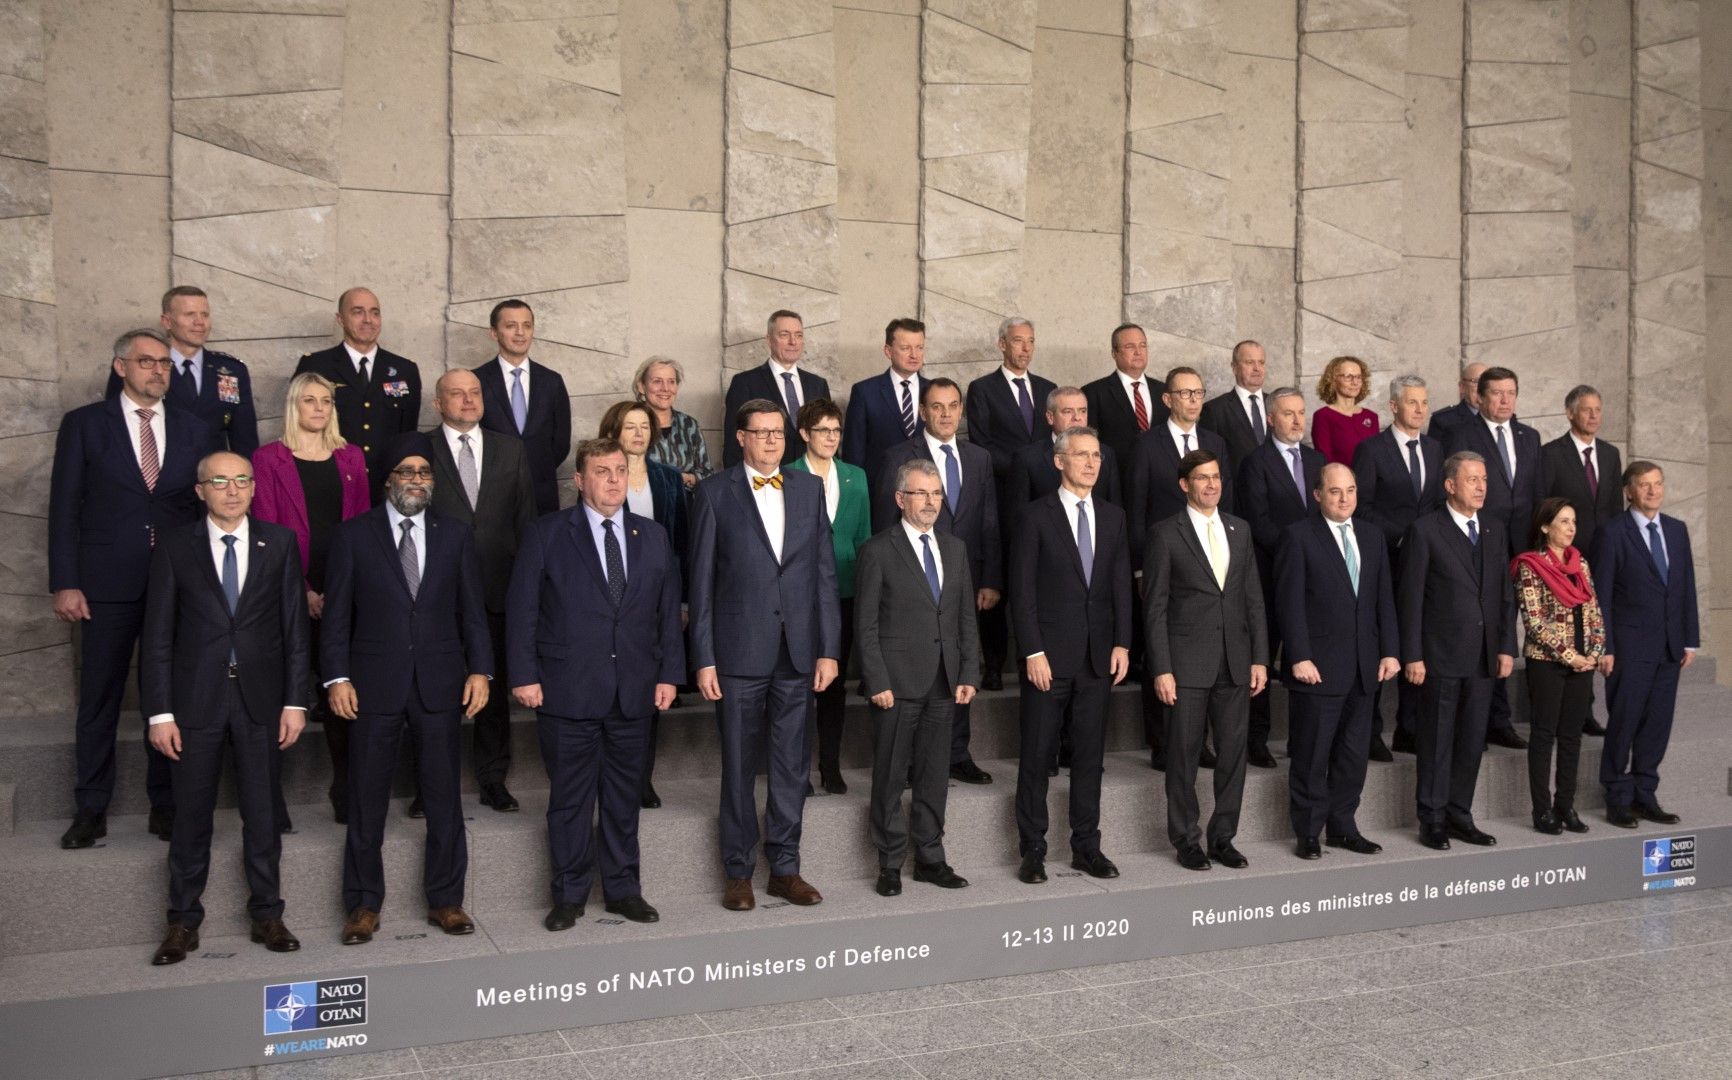 Министрите на отбраната в НАТО на срещата им през февруари